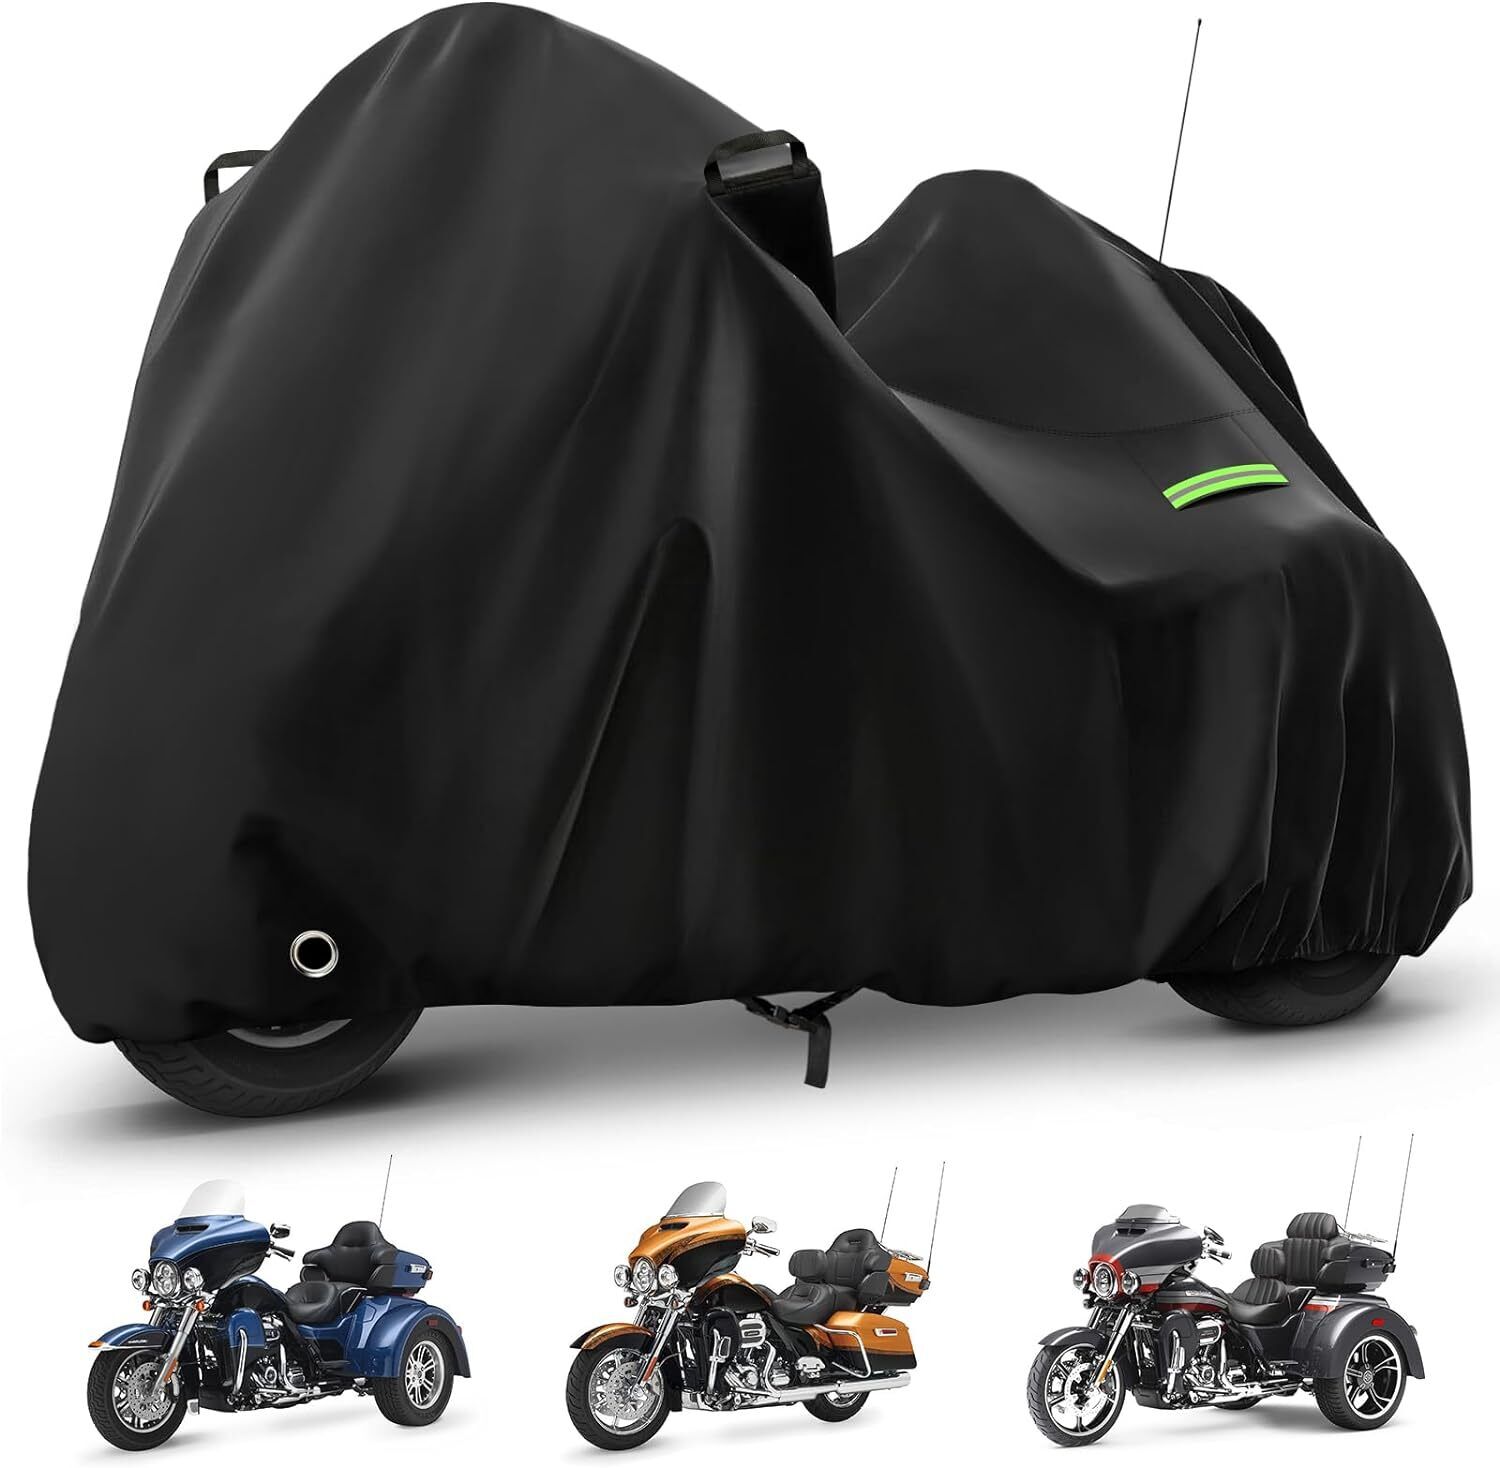 Motorcycle Cover Waterproof for Trike Models Freewheeler/CVO Version/Tri